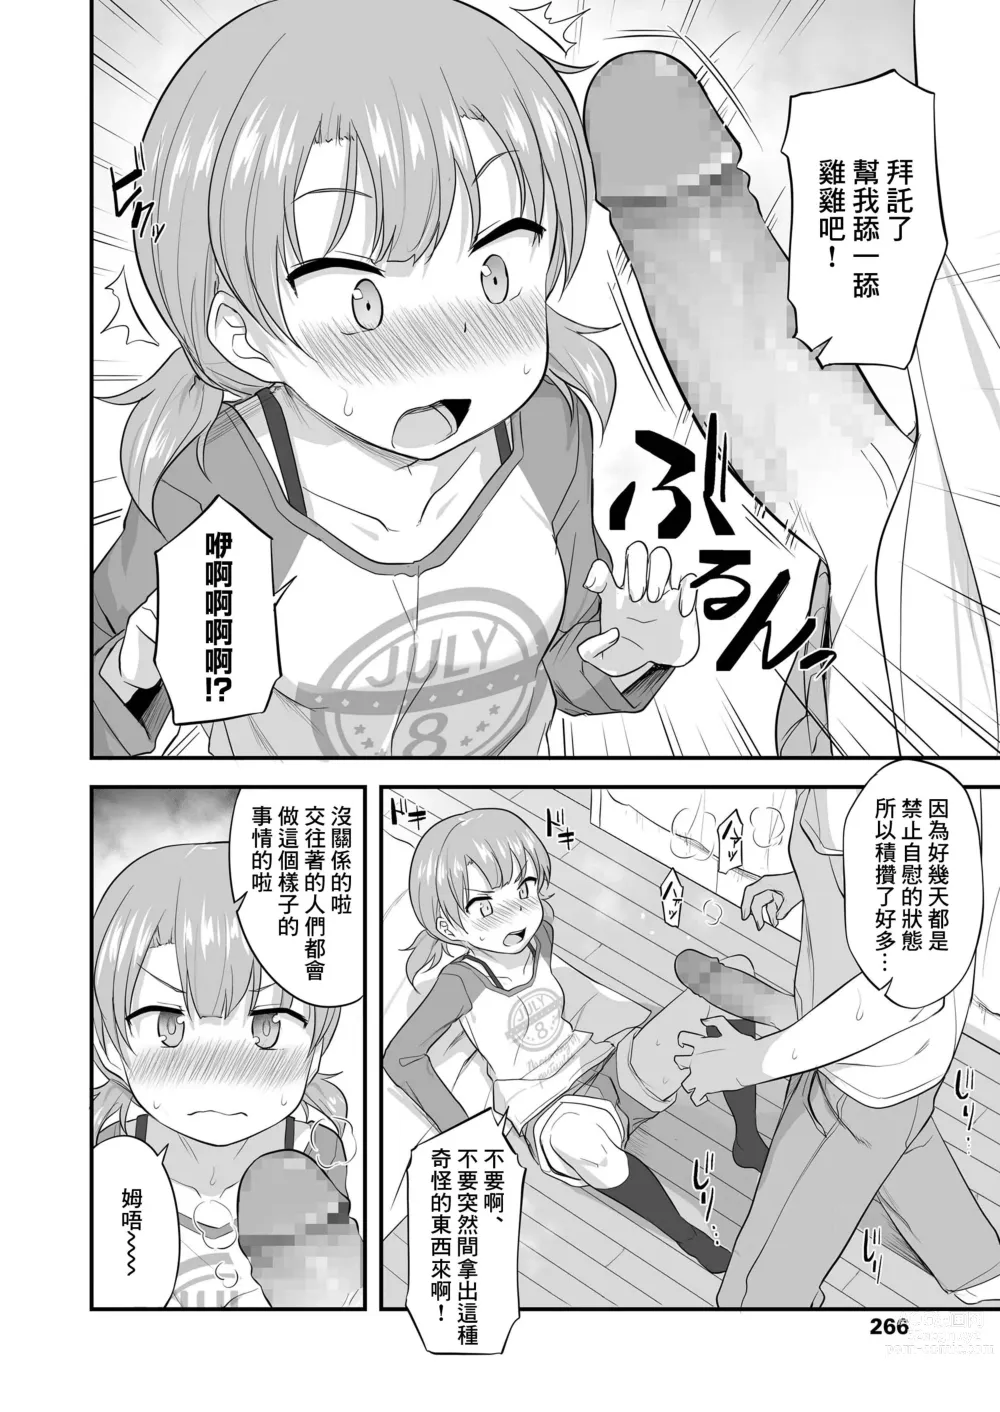 Page 6 of manga Imouto Gokoro to Haru no Sora